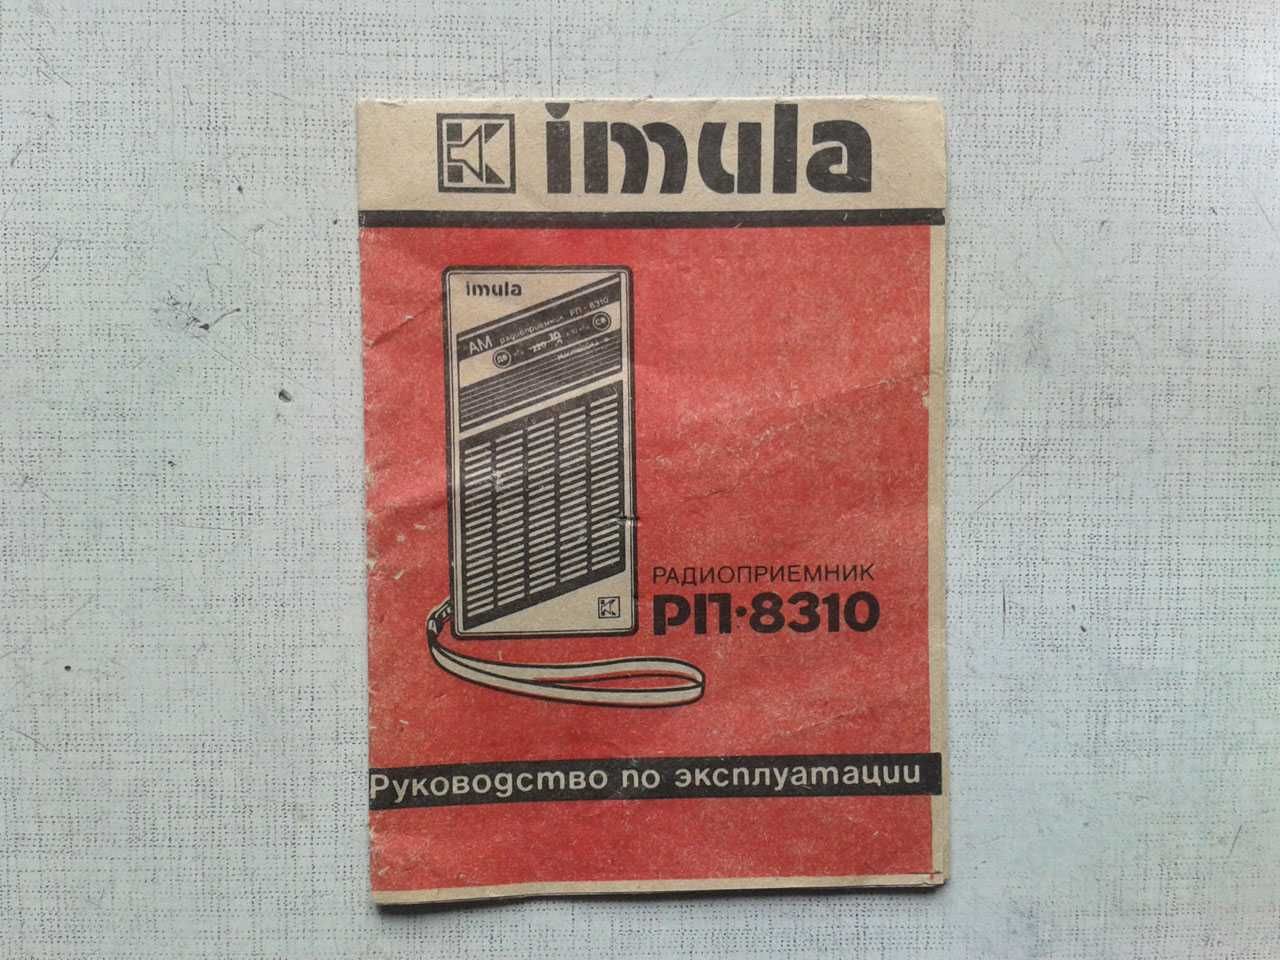 Инструкция от радиоприемника Имула РП 8310 (Imula)